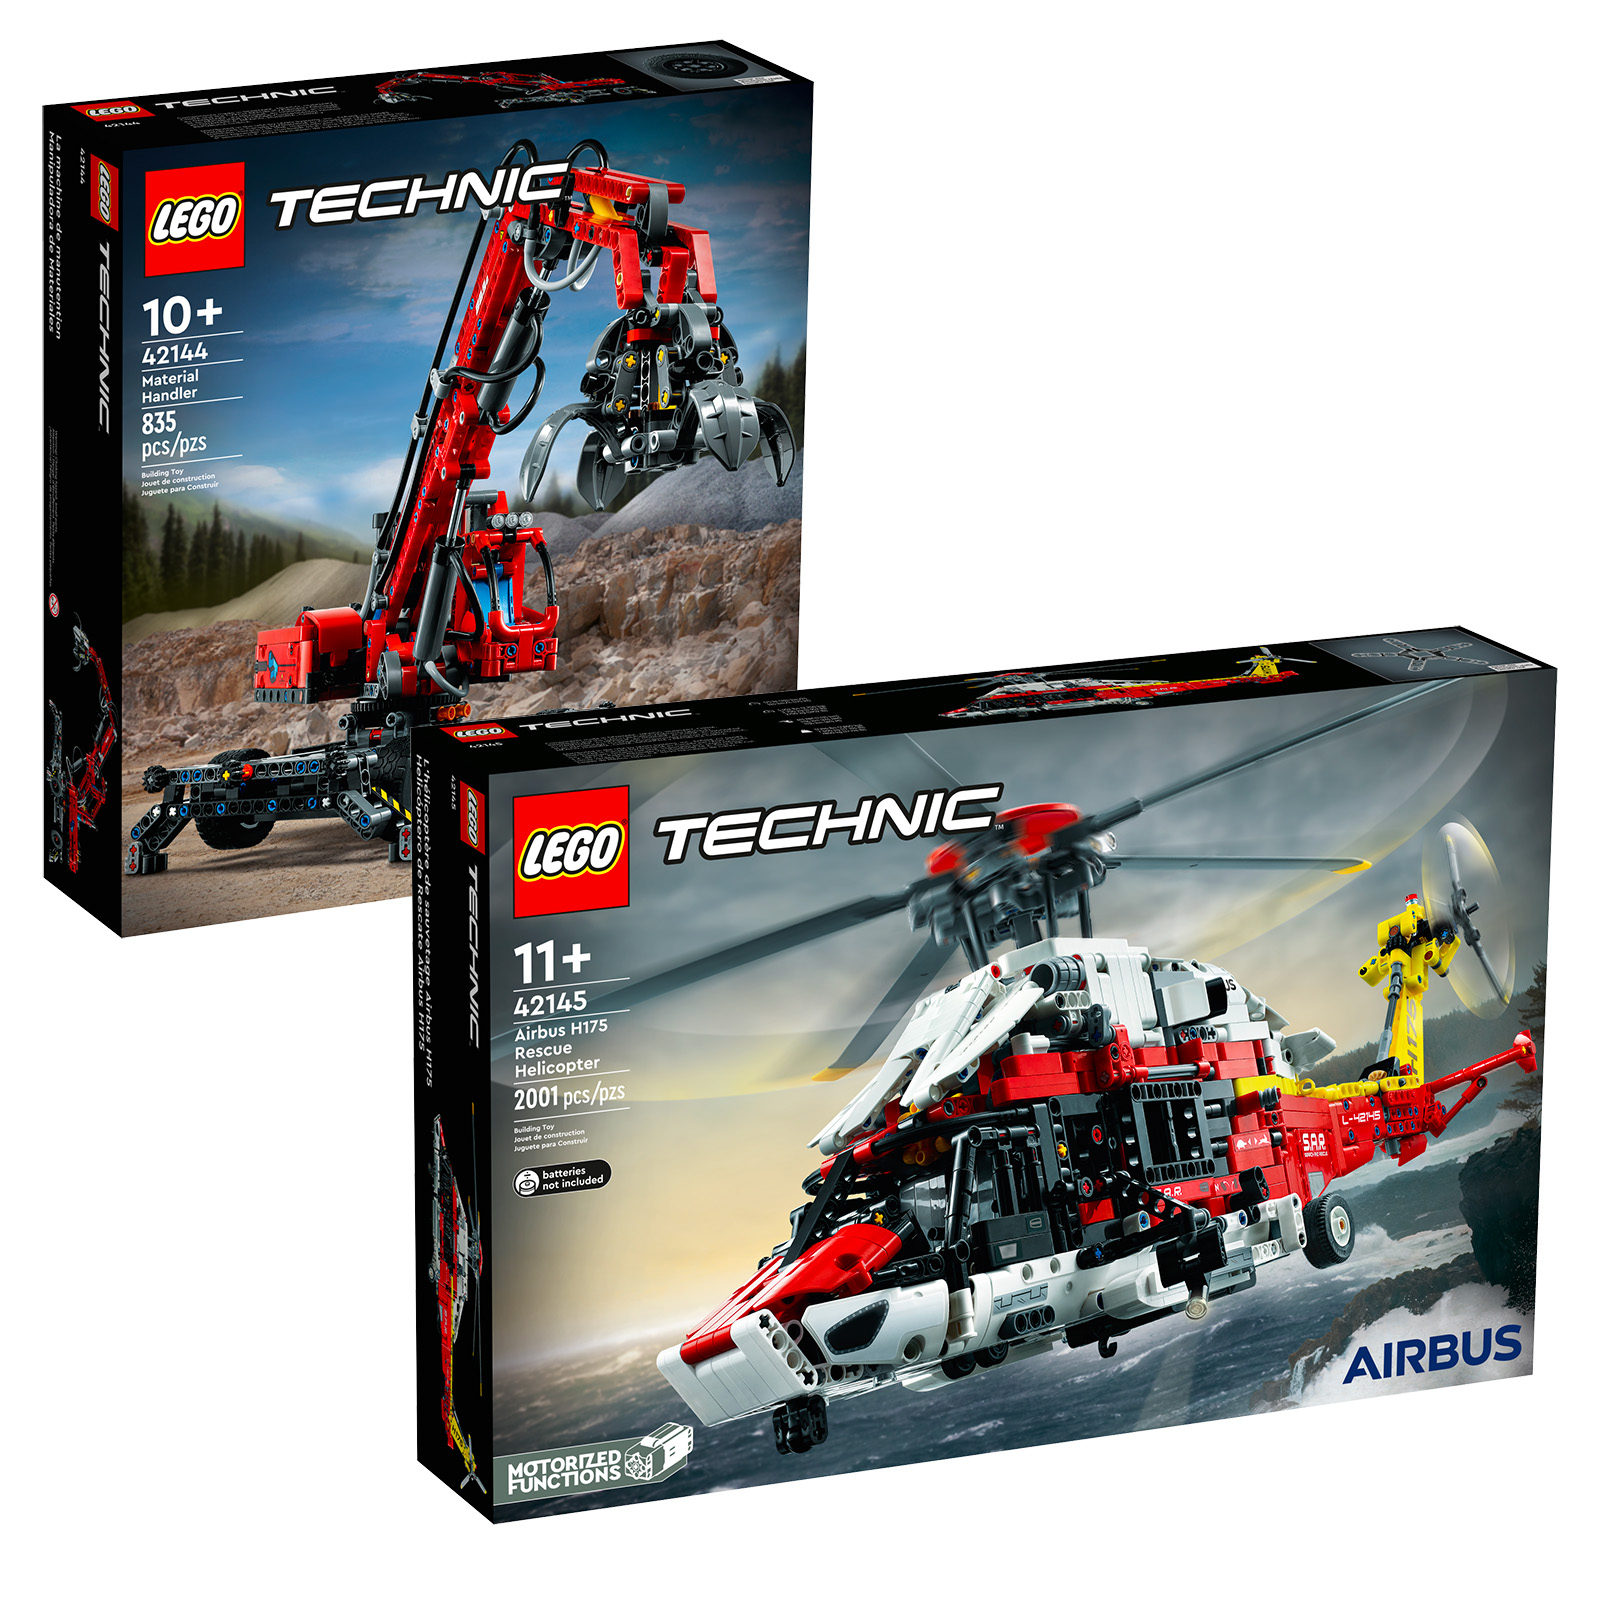 LEGO poes: LEGO Technic 42144 materjalikäitleja ja 42145 Airbus H175 päästehelikopteri komplektid on võrgus